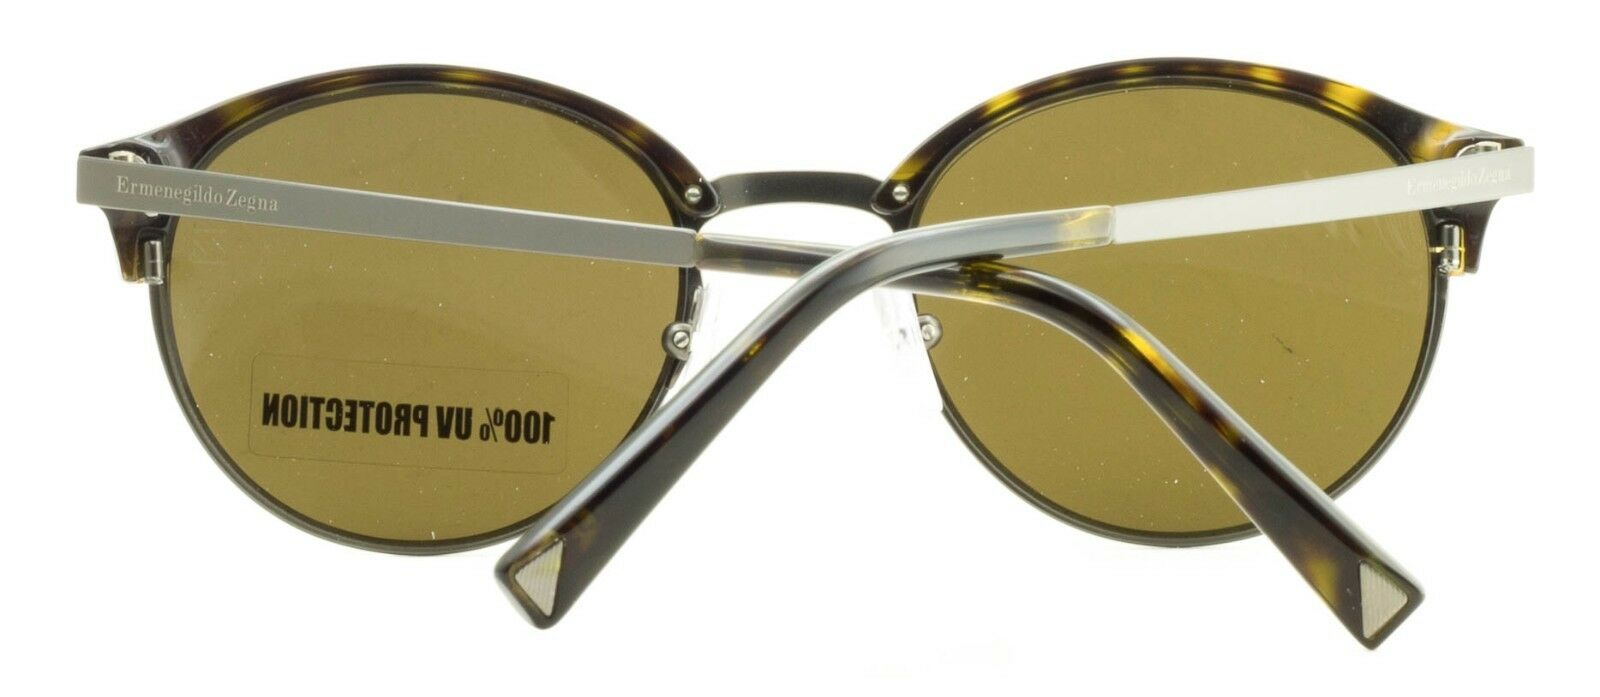 Ermenegildo Zegna EZ 0046 52J Sunglasses Shades Glasses 100% UV - New BNIB Italy